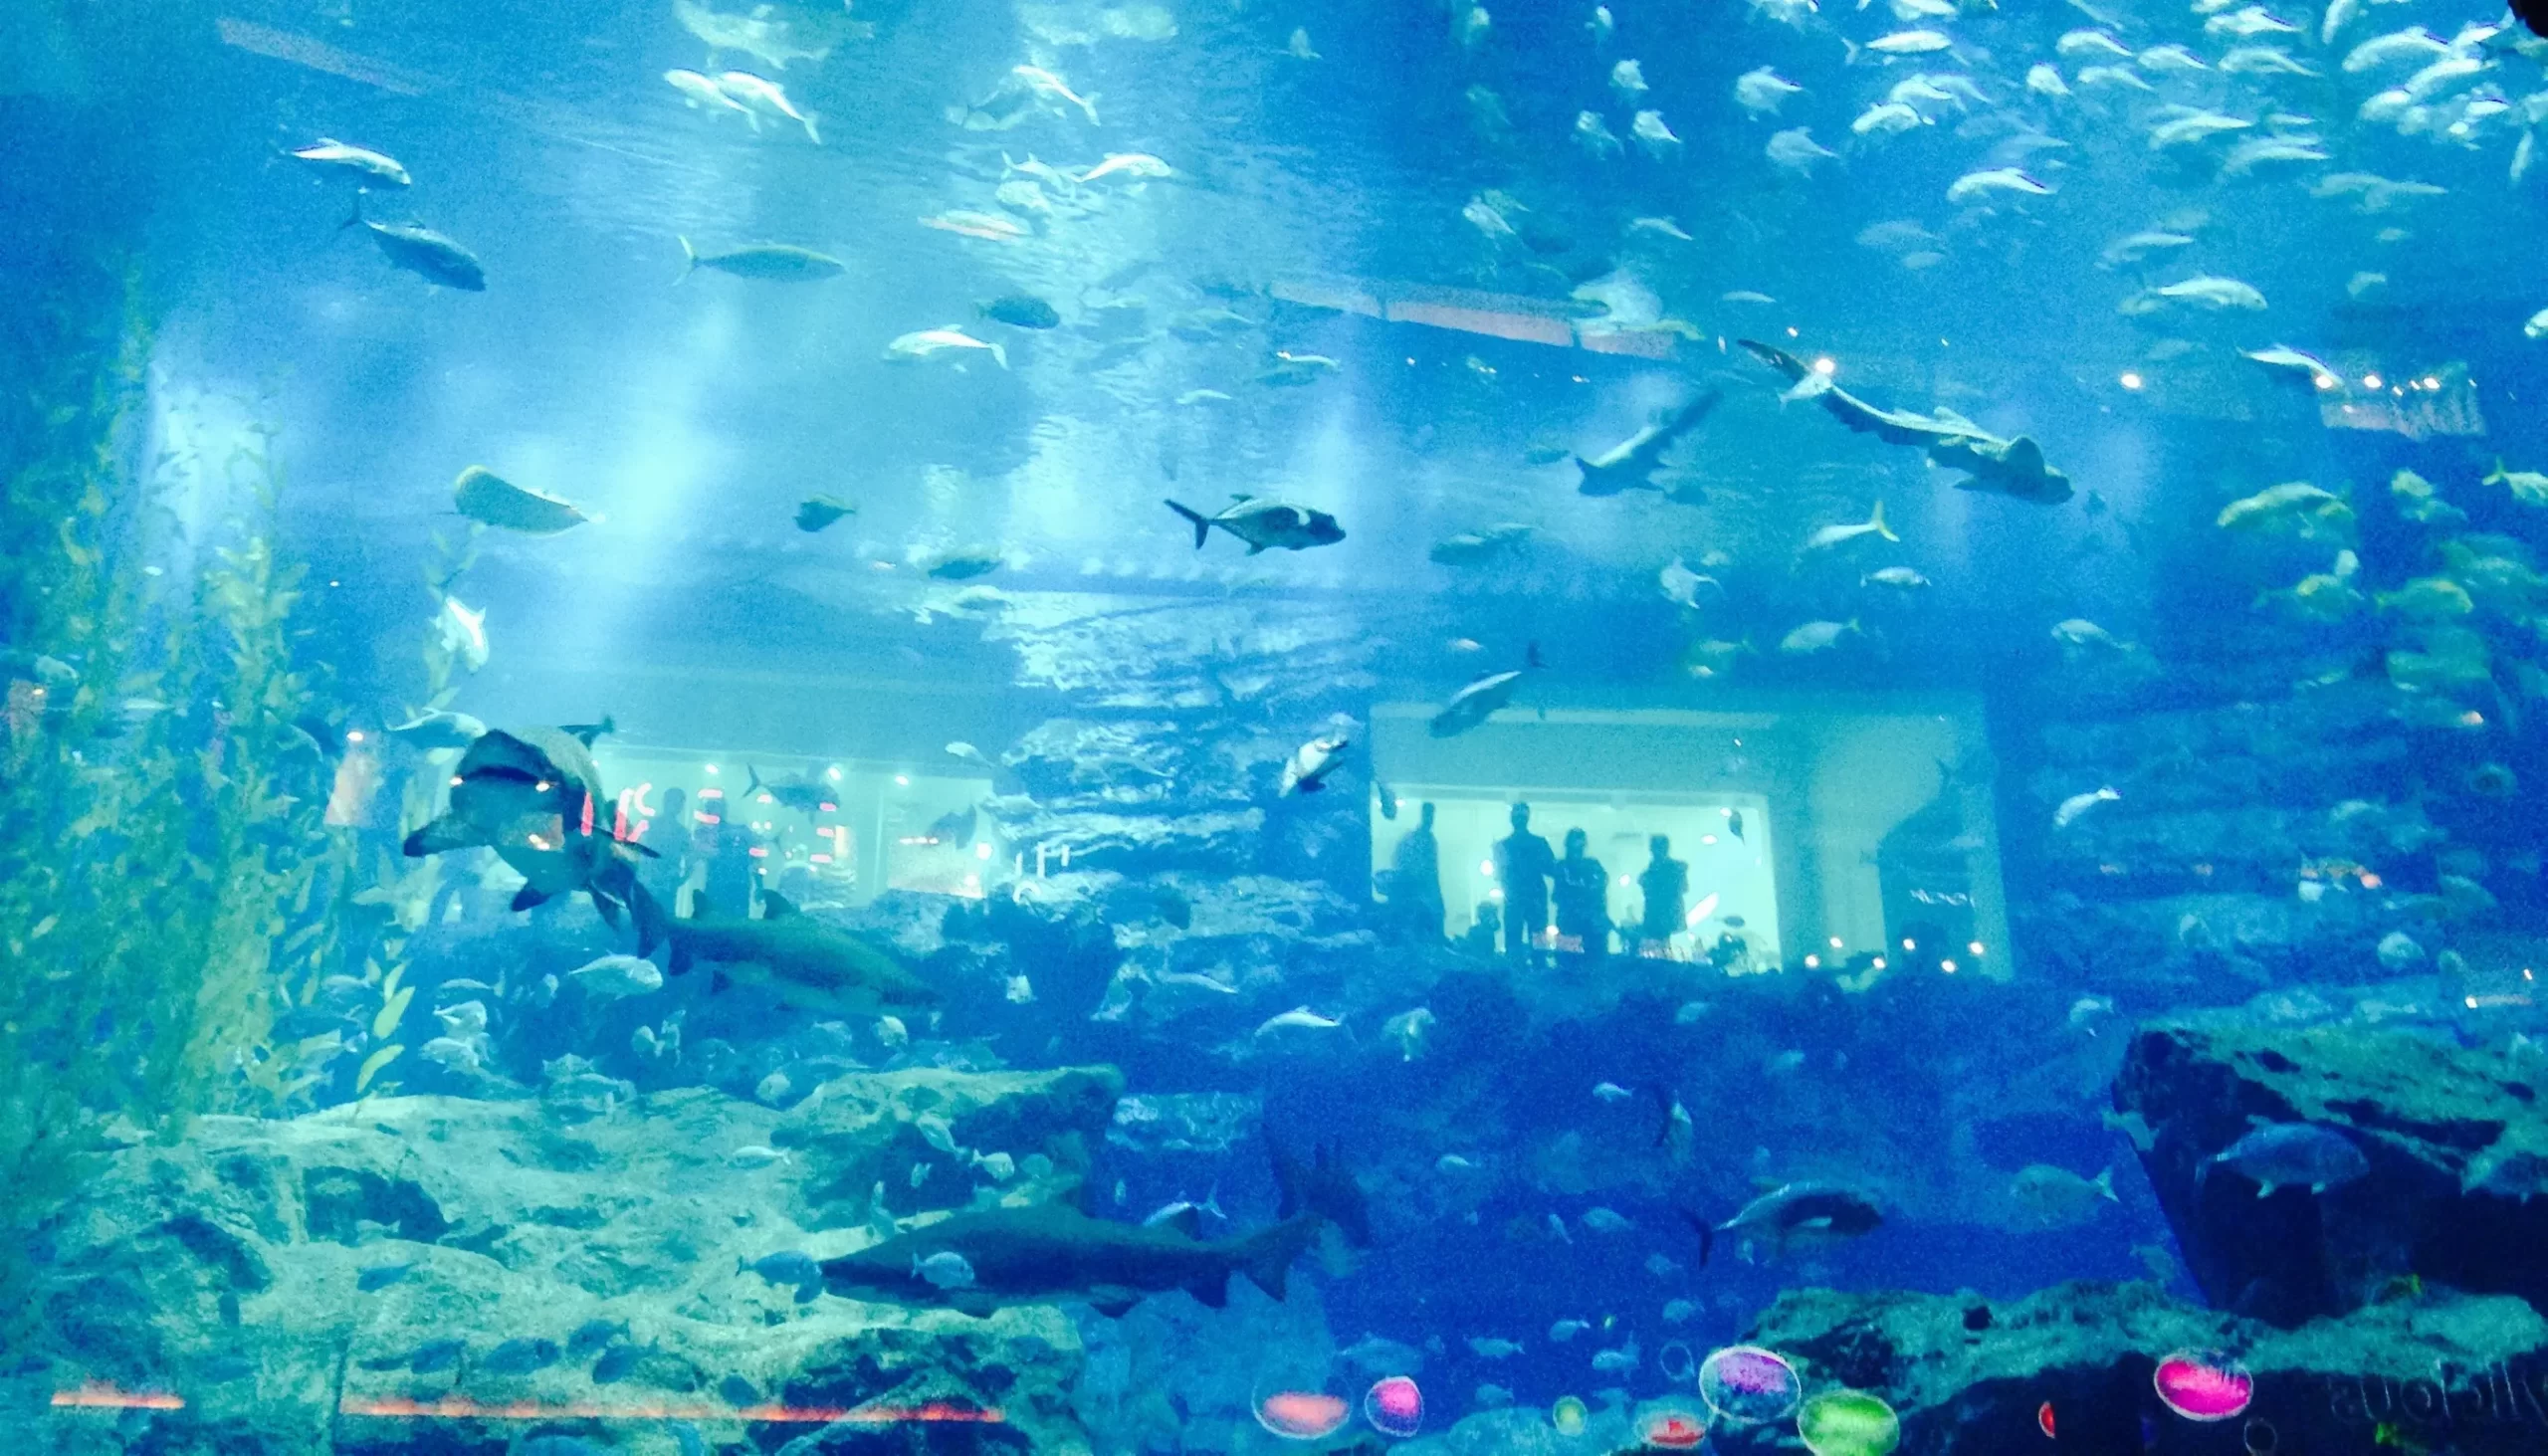 Аквариум "Дубай Молл" - крупнейший аквариум в мире, расположенный в торговом центре Дубай Молл, ОАЭ.